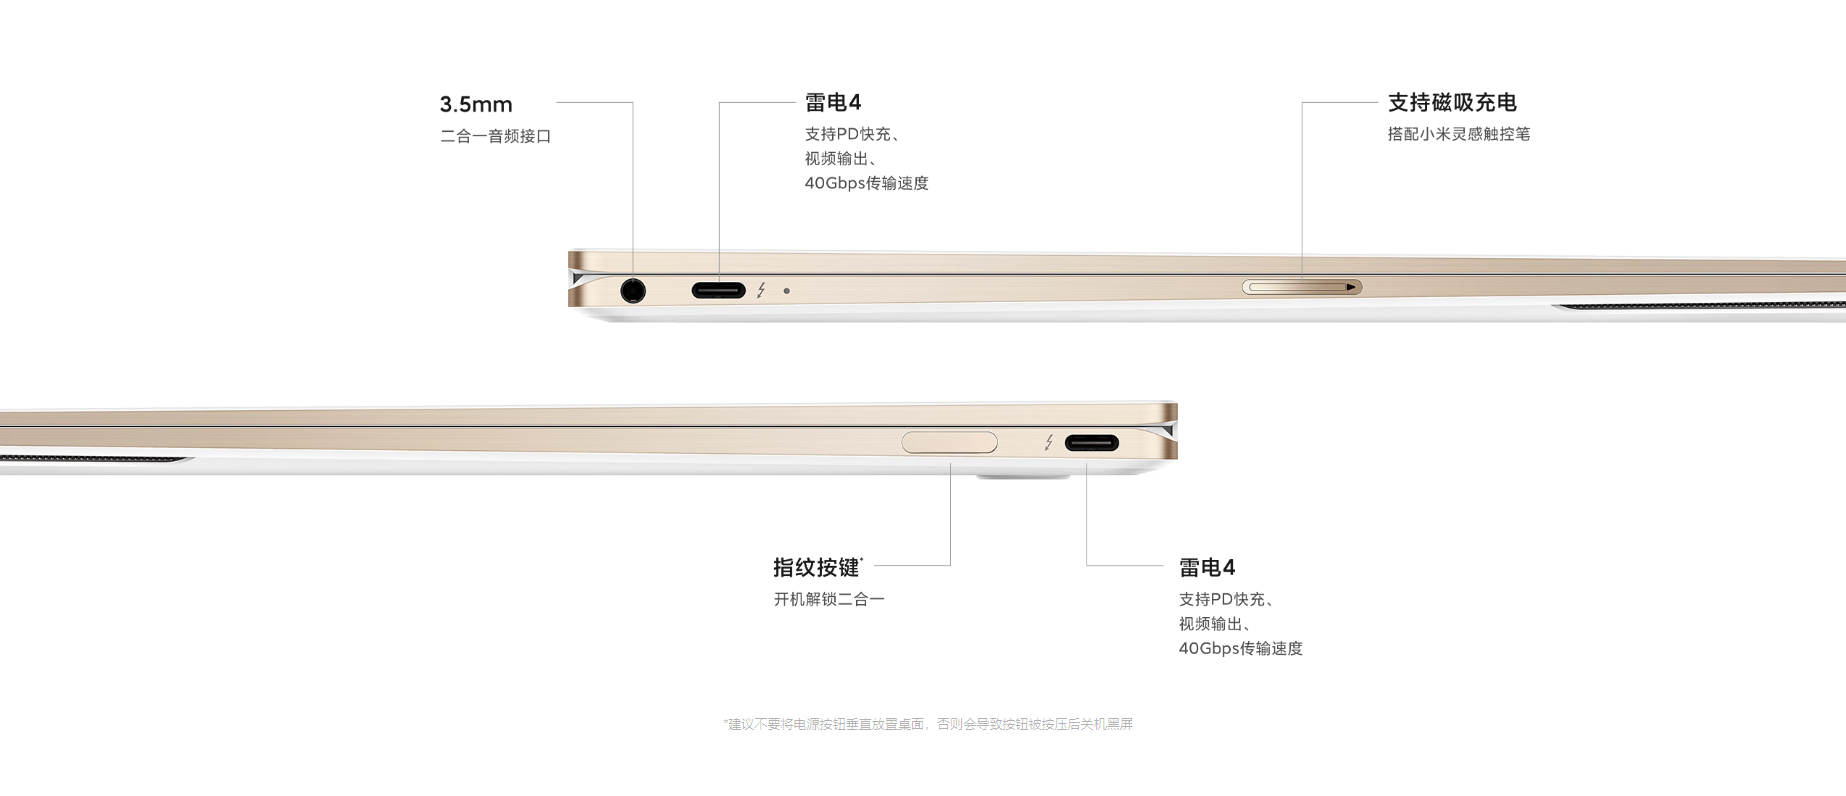 Xiaomi Book Air ports